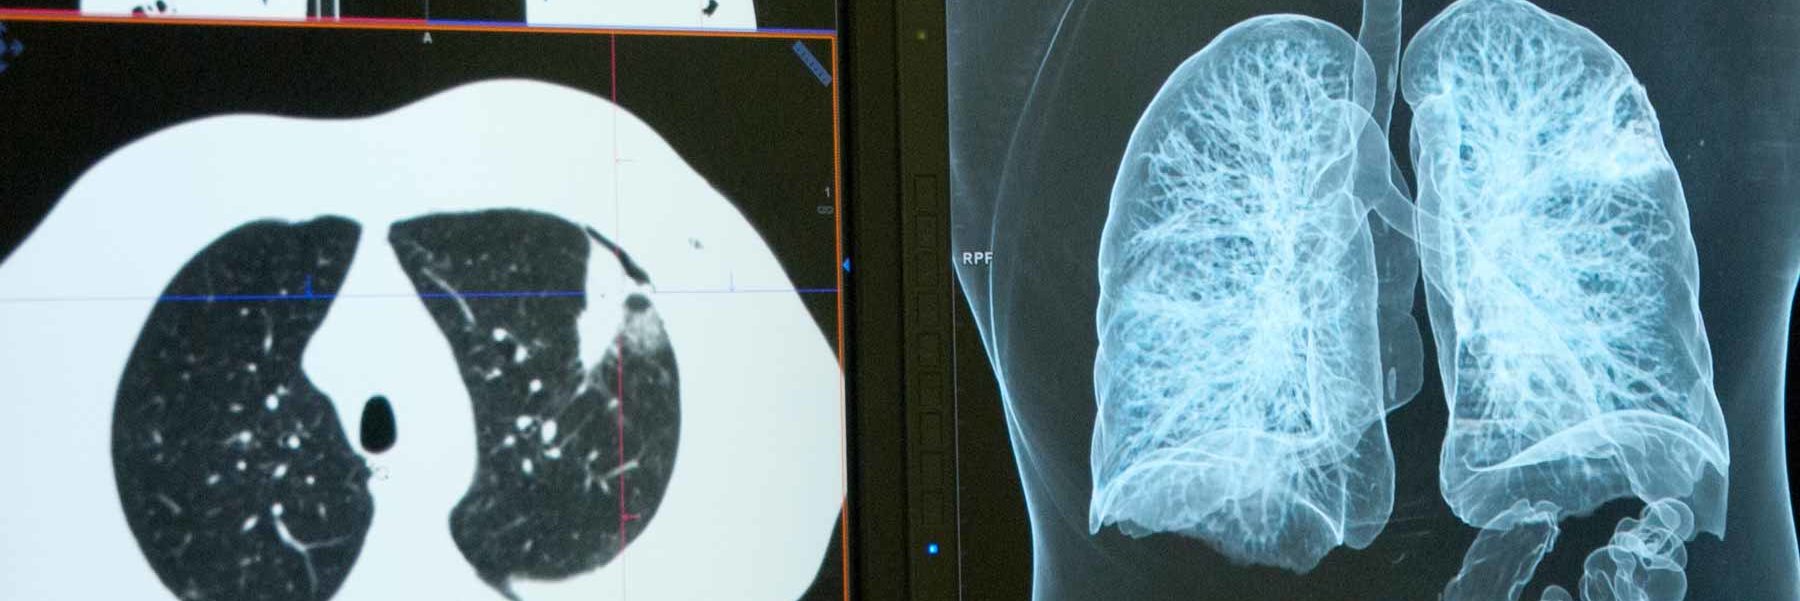 Detección precoz cáncer de pulmón